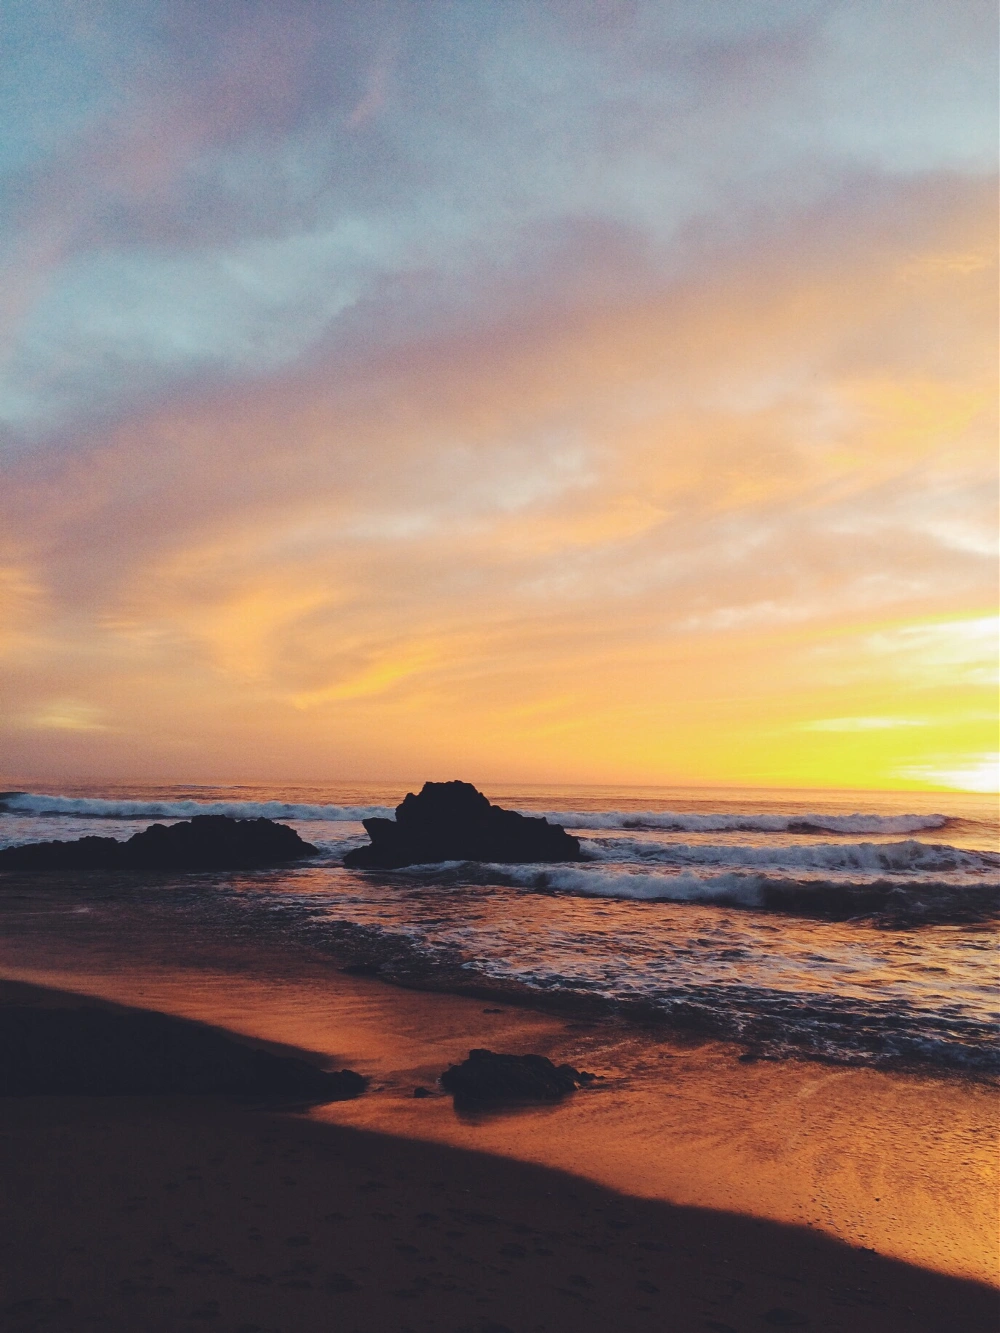 Sunset ❤️ #beach #ocean